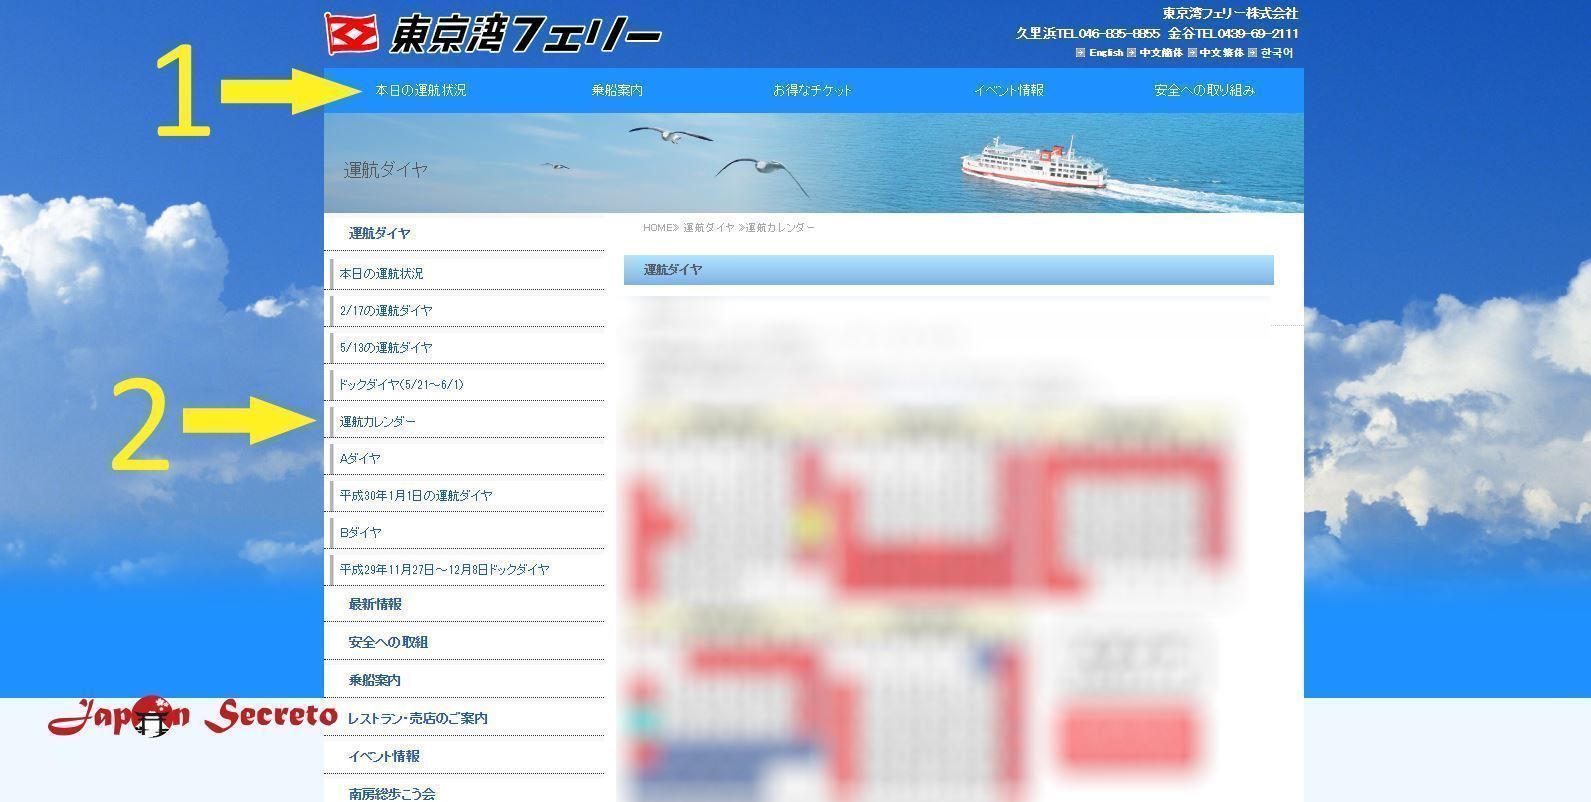 Web Tokyo Wan Ferry